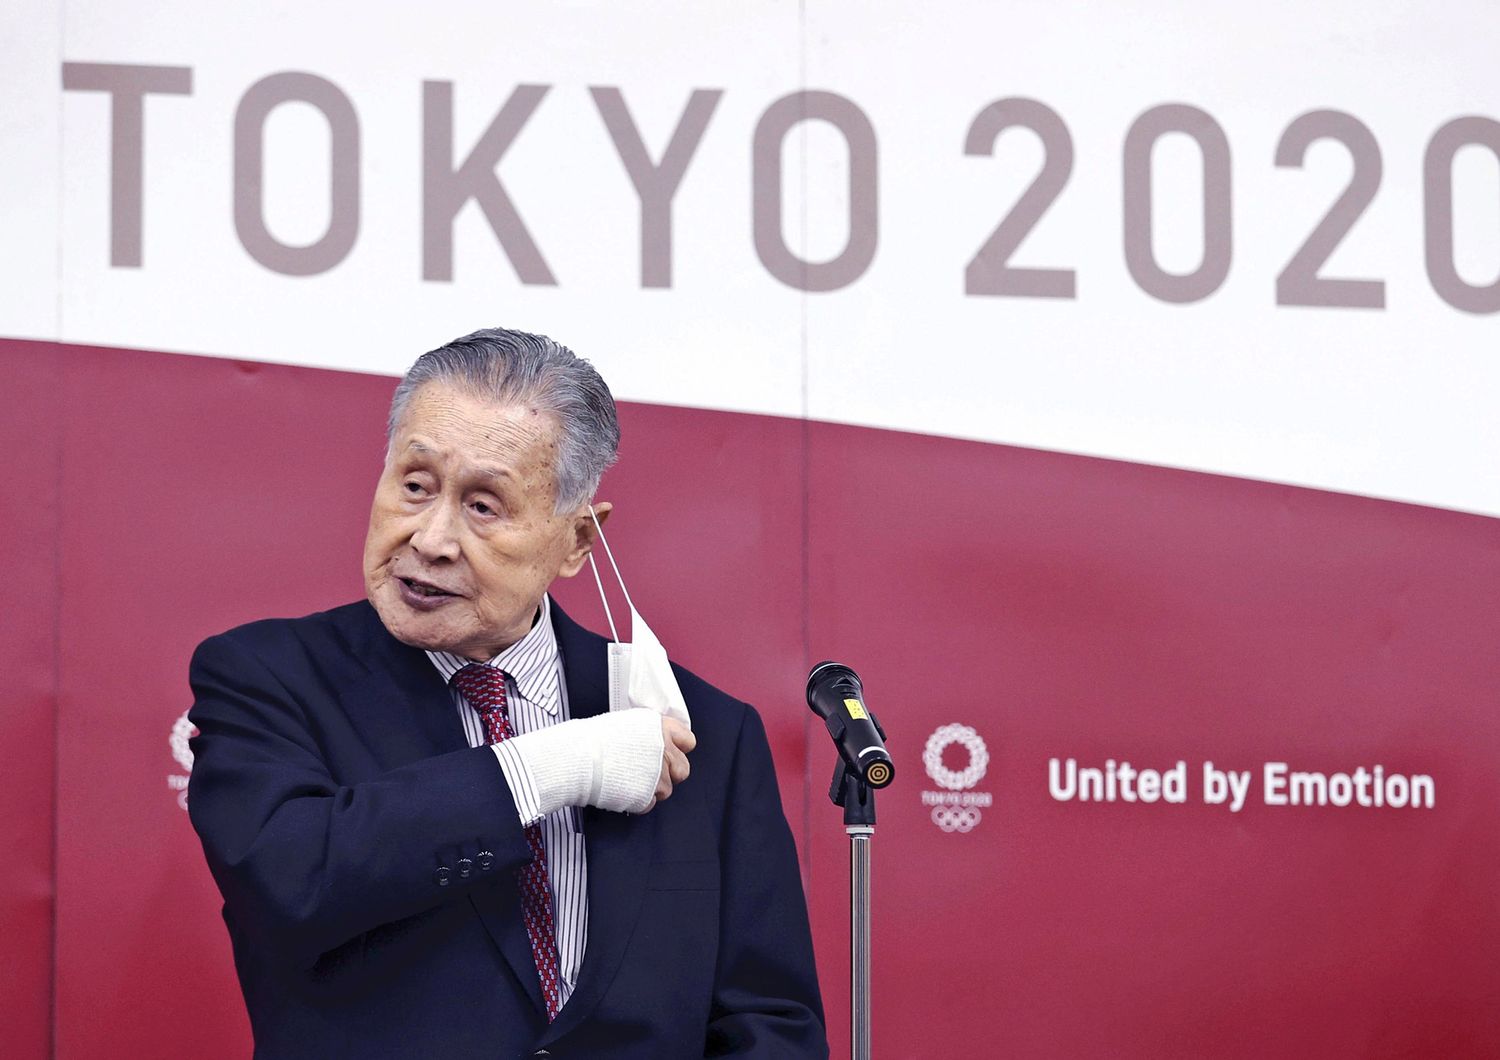 Il presidente delle Olimpiadi di Tokyo, Yoshiro Mori